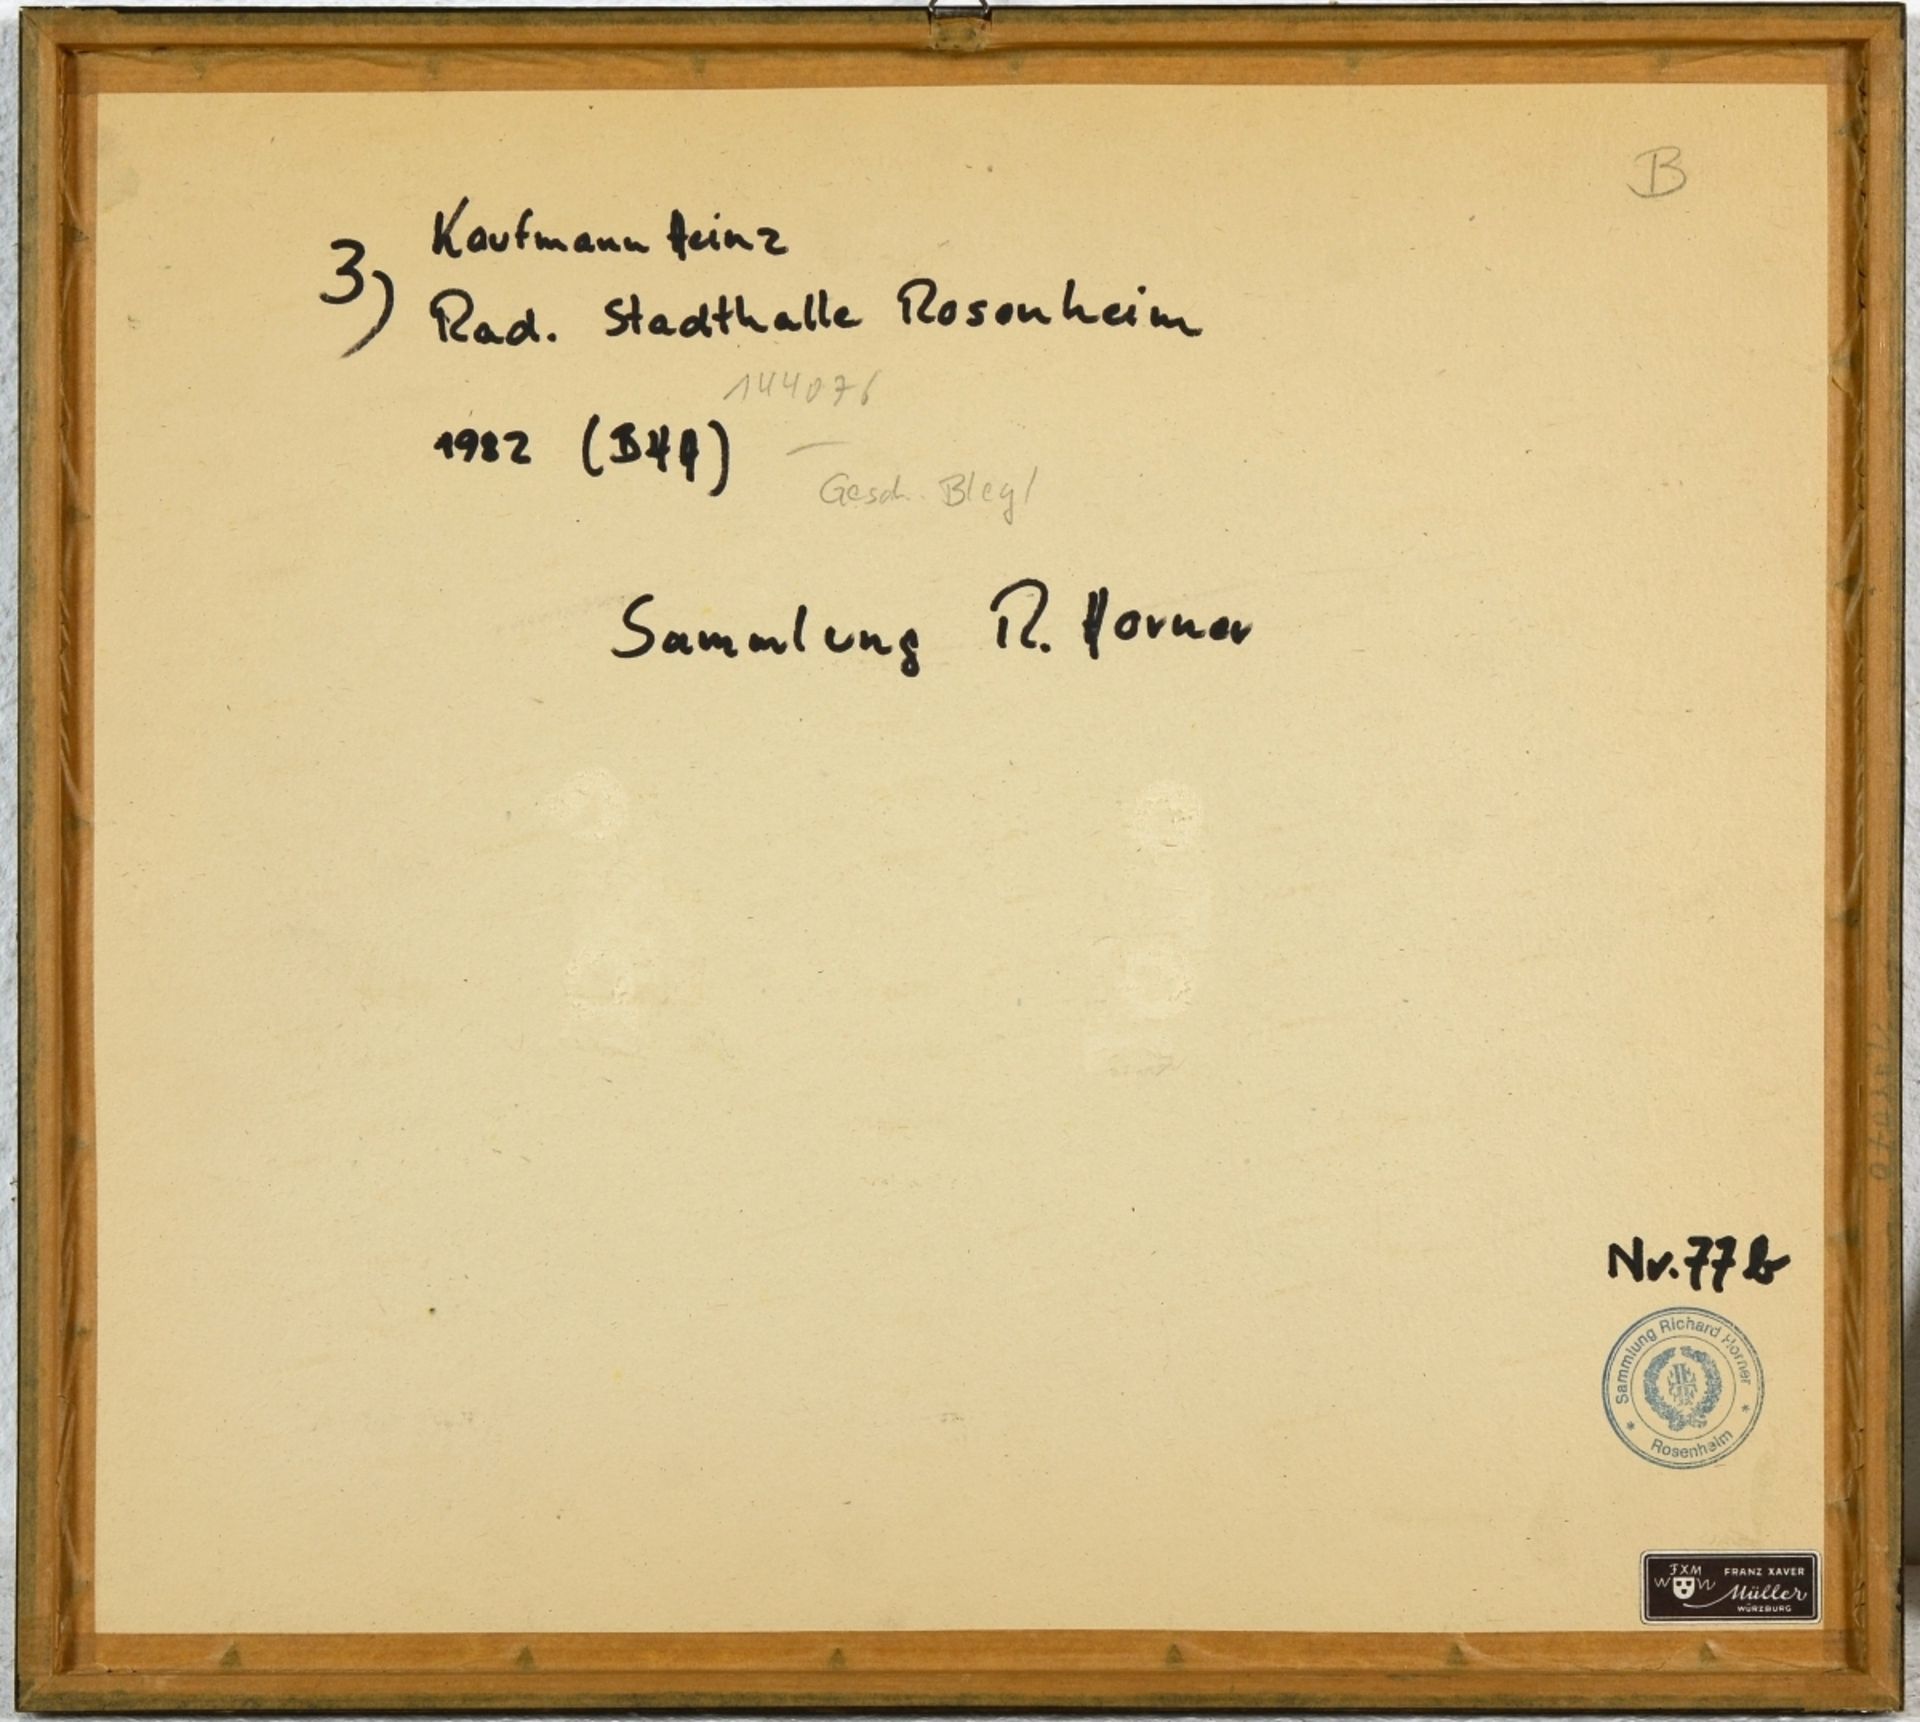 Kaufmann, Heinz | 1932 Offenburg - 2014 Rosenheim - Bild 3 aus 3